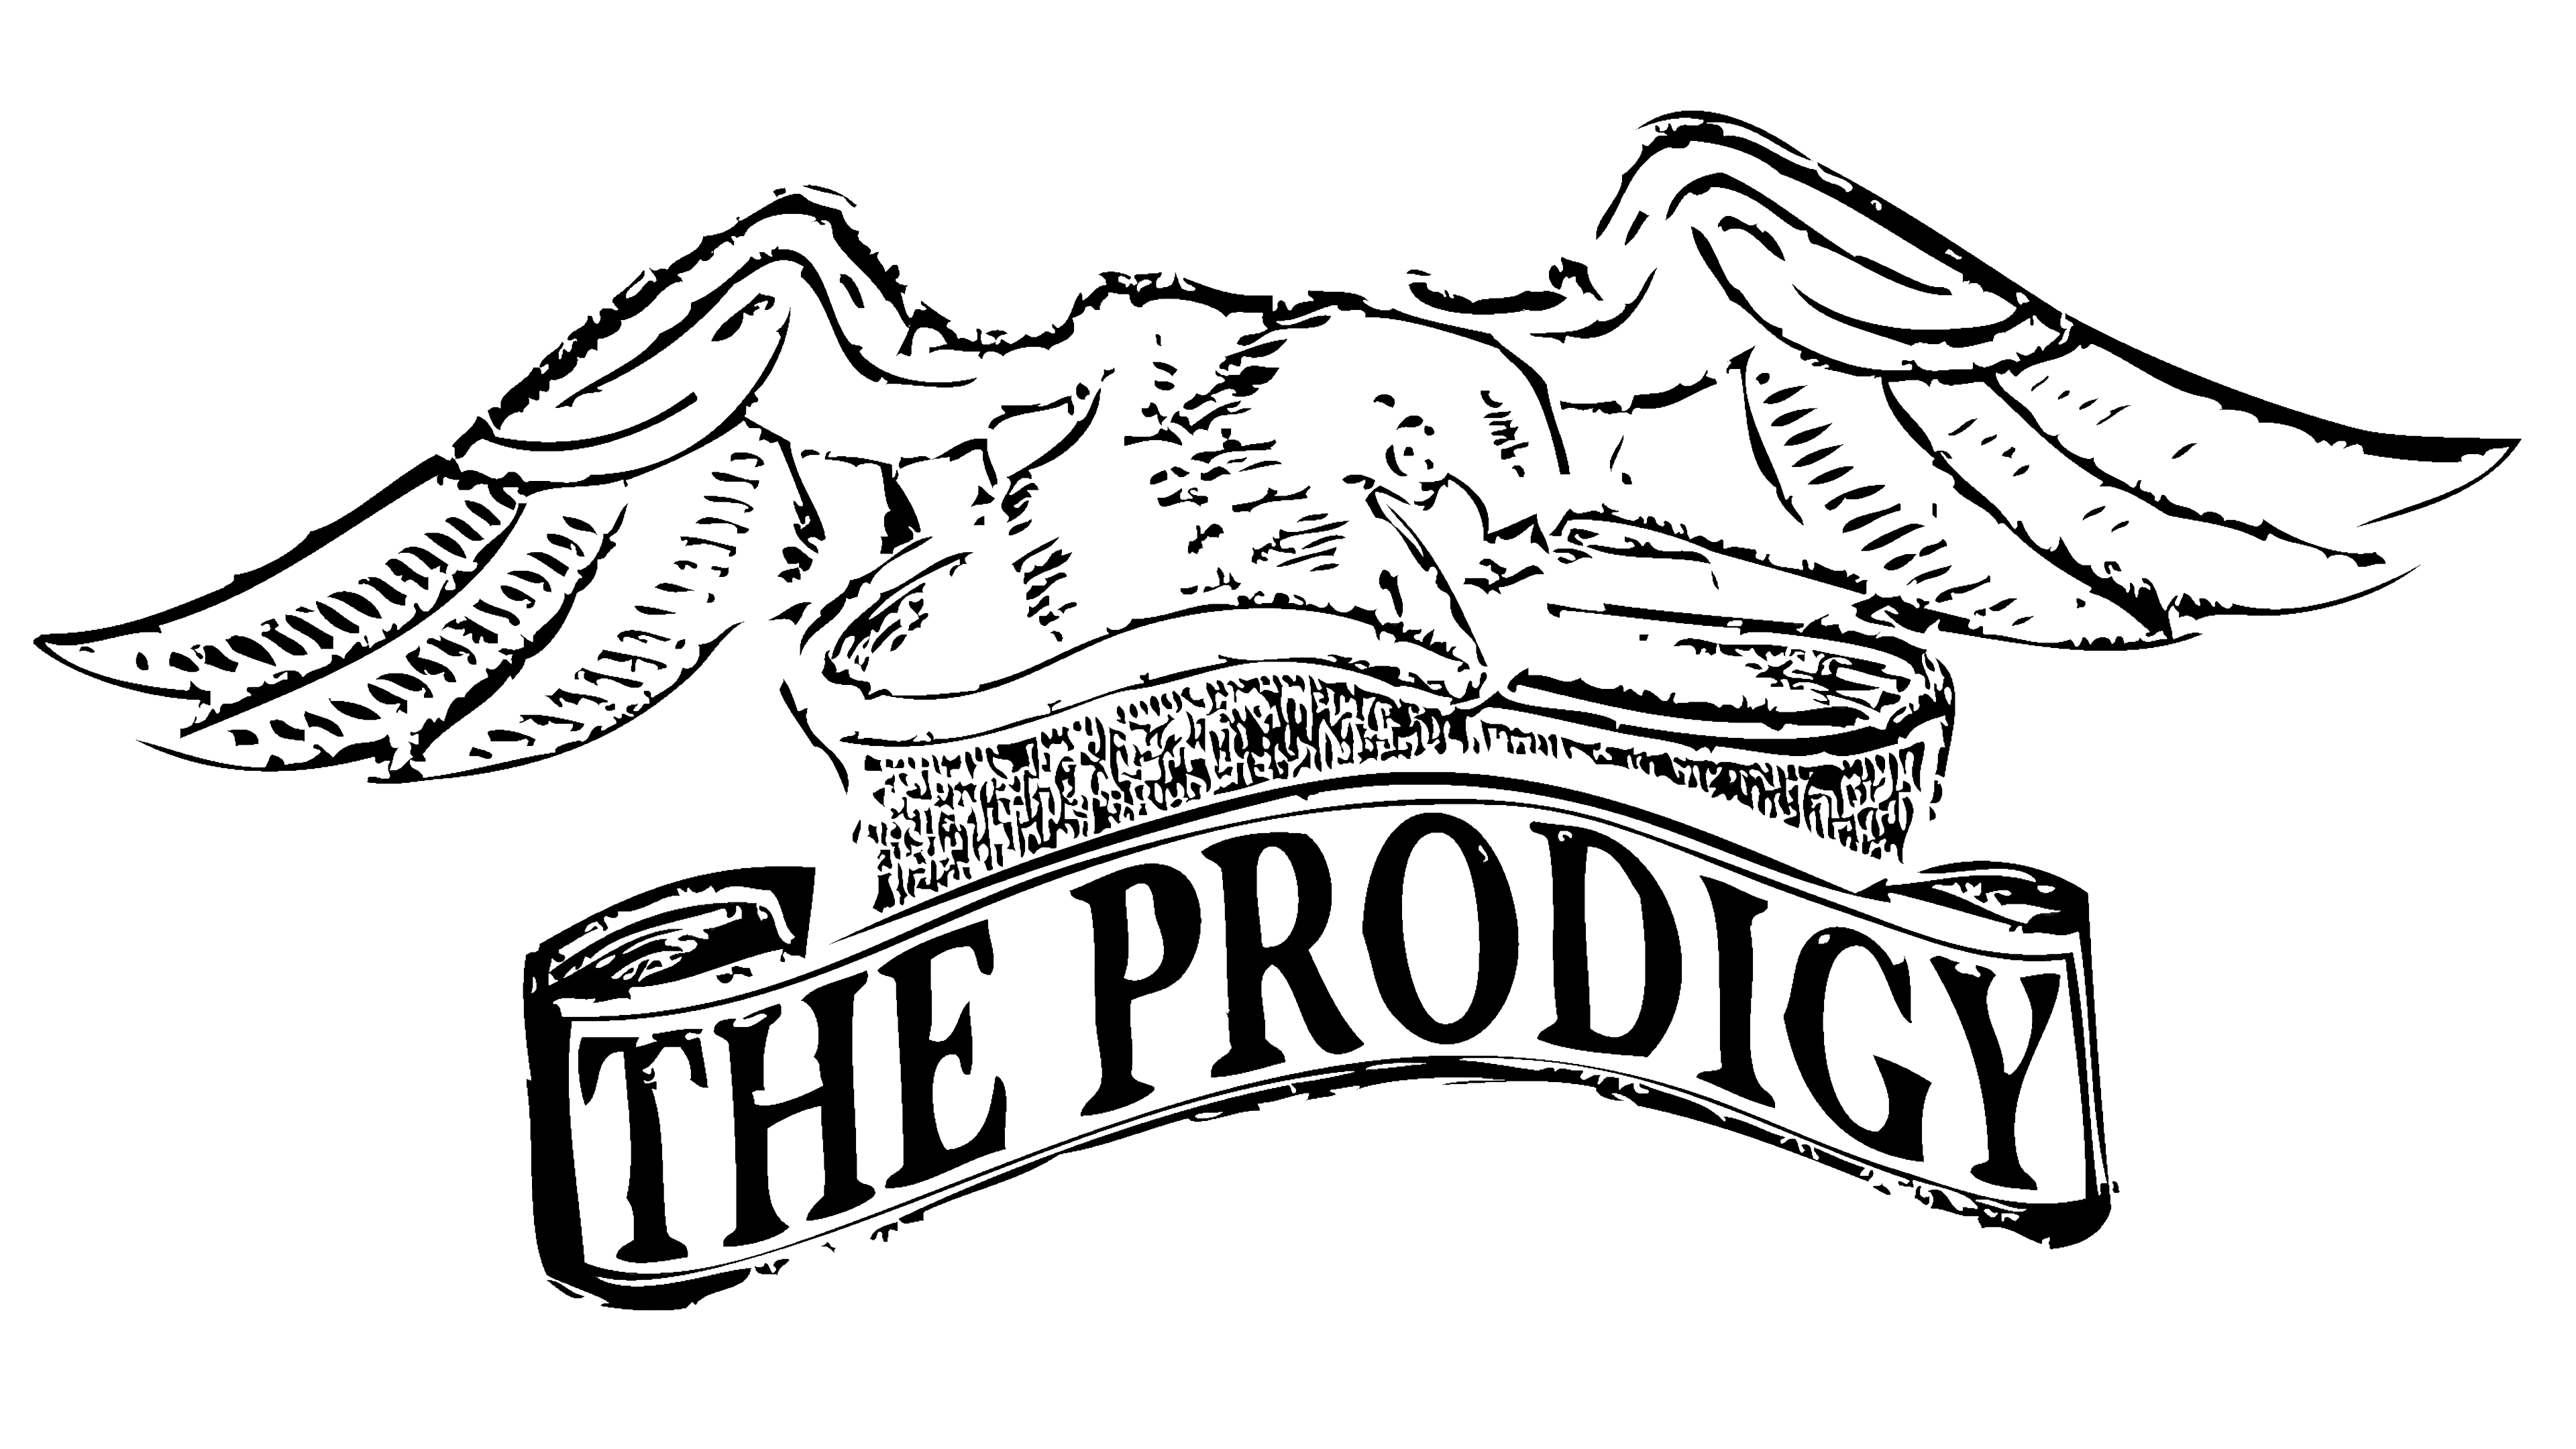 Prodigy their. Prodigy лого. Prodigy their Law. The Prodigy their Law the Singles 1990-2005. Prodigy надпись.